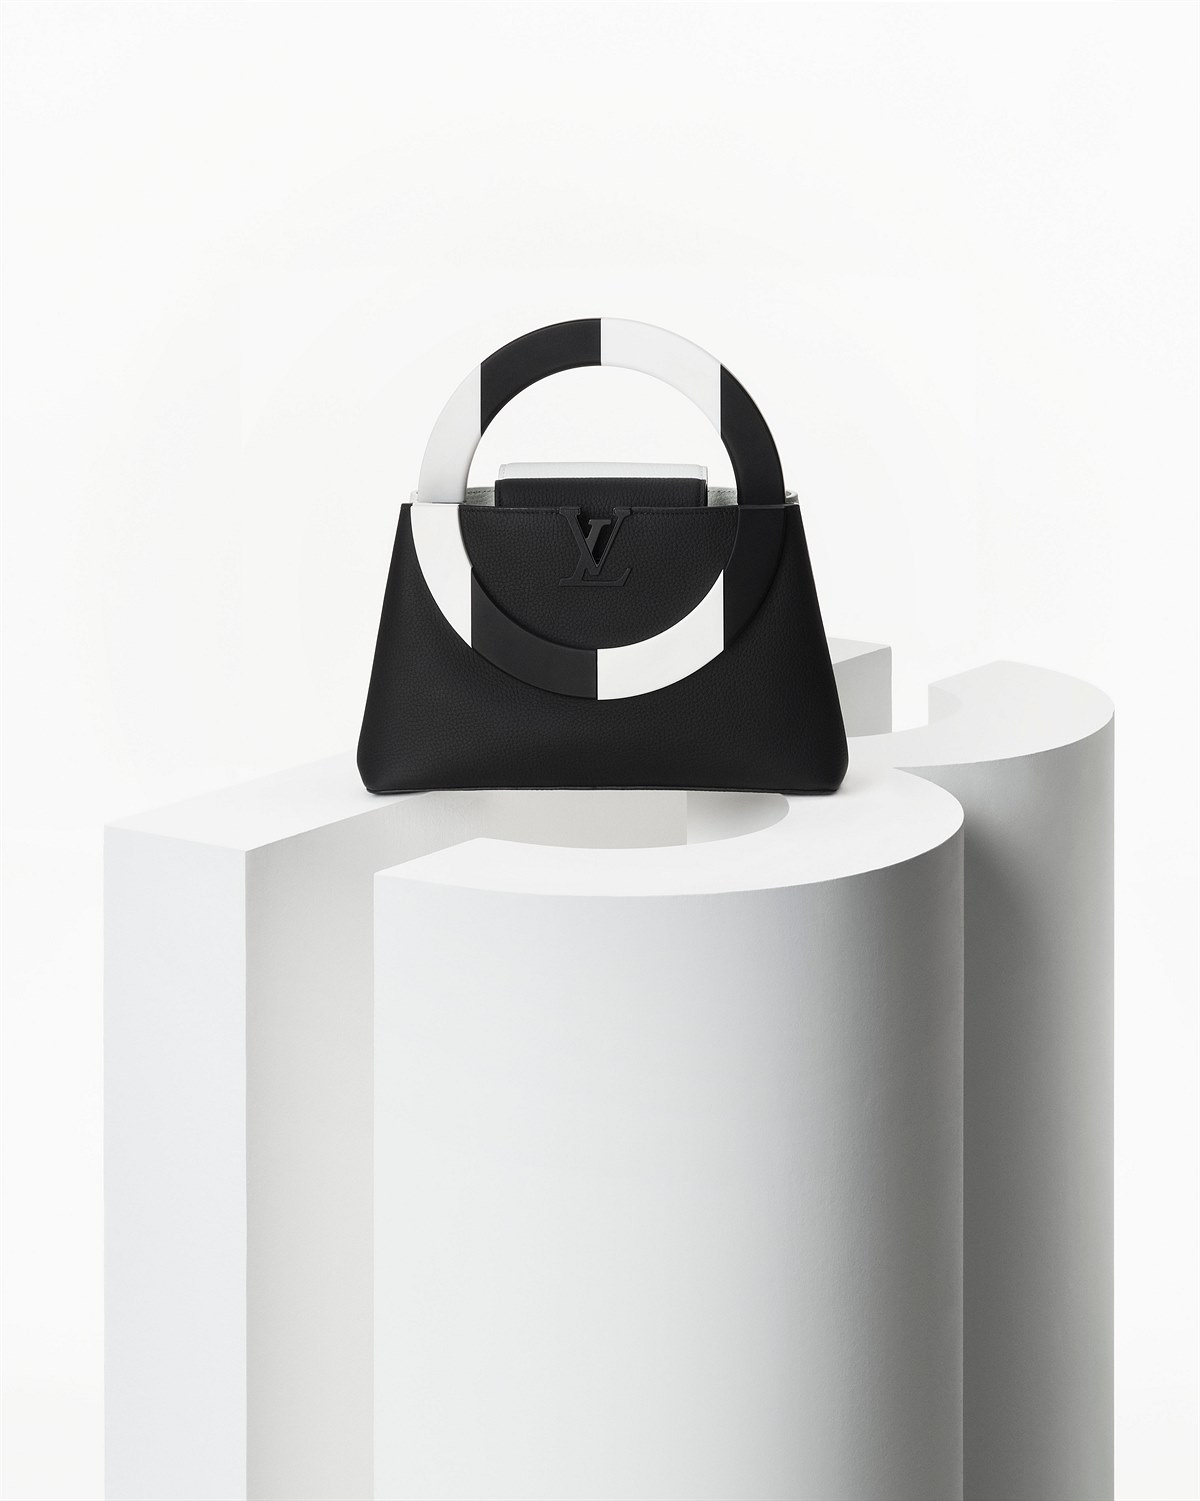 Louis Vuitton Artycapucines 2022_Chapter 4_Still life_Daniel Buren_Black